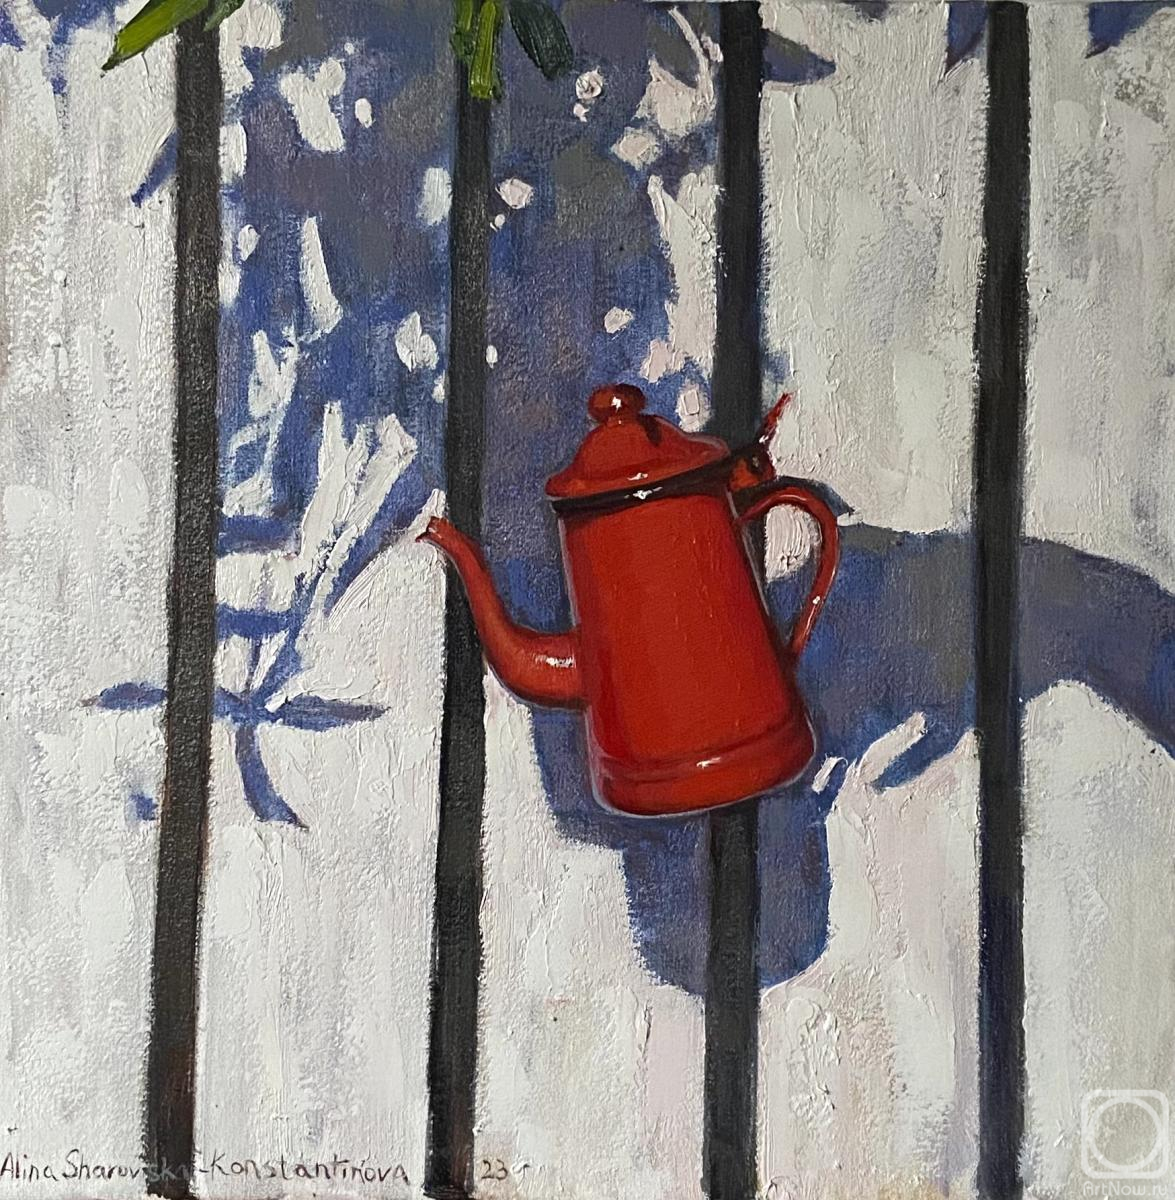 Sharovskaya-Konstantinova Alina. "Red teapot